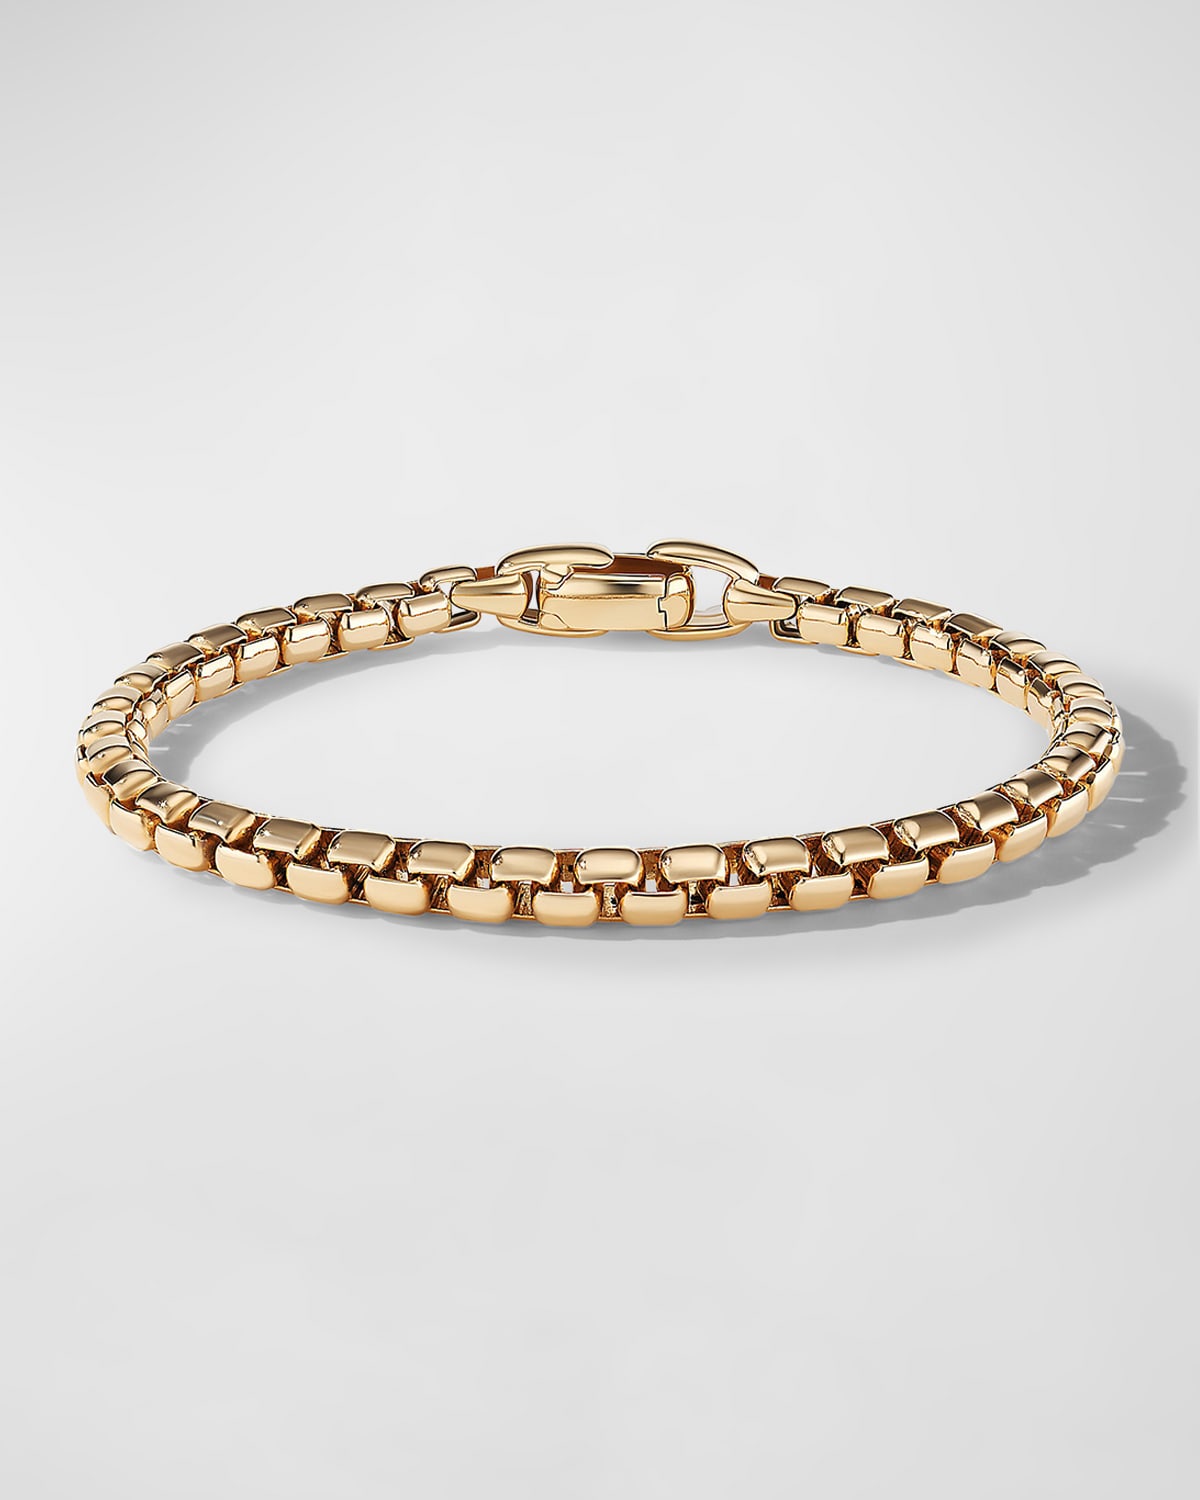 Men's Box Chain Bracelet in 18K Gold, 5mm